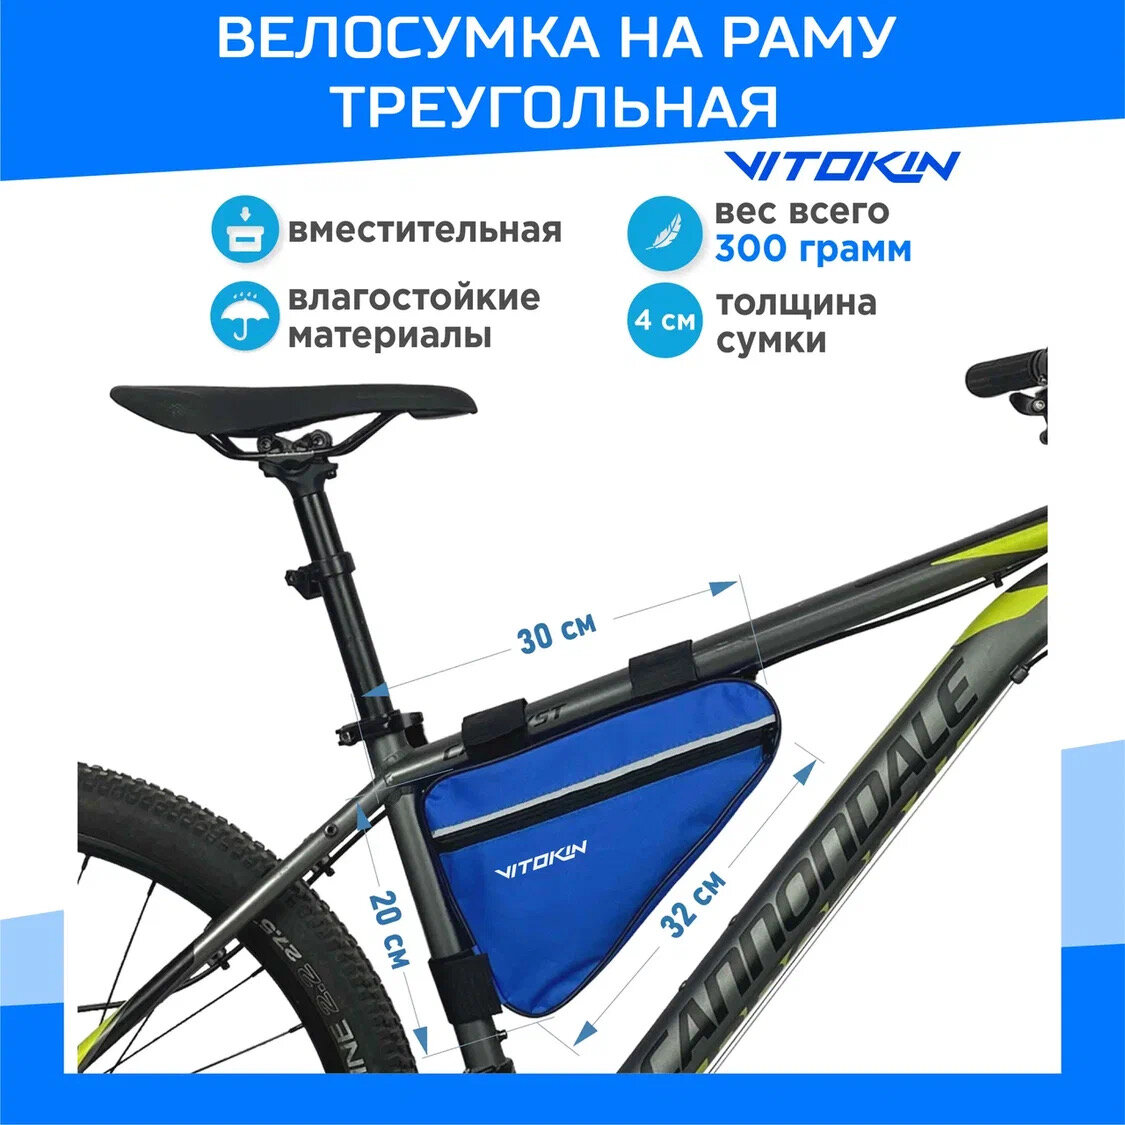 Велосумка под раму велосипеда, сумка велосипедная треугольная VITOKIN, голубая